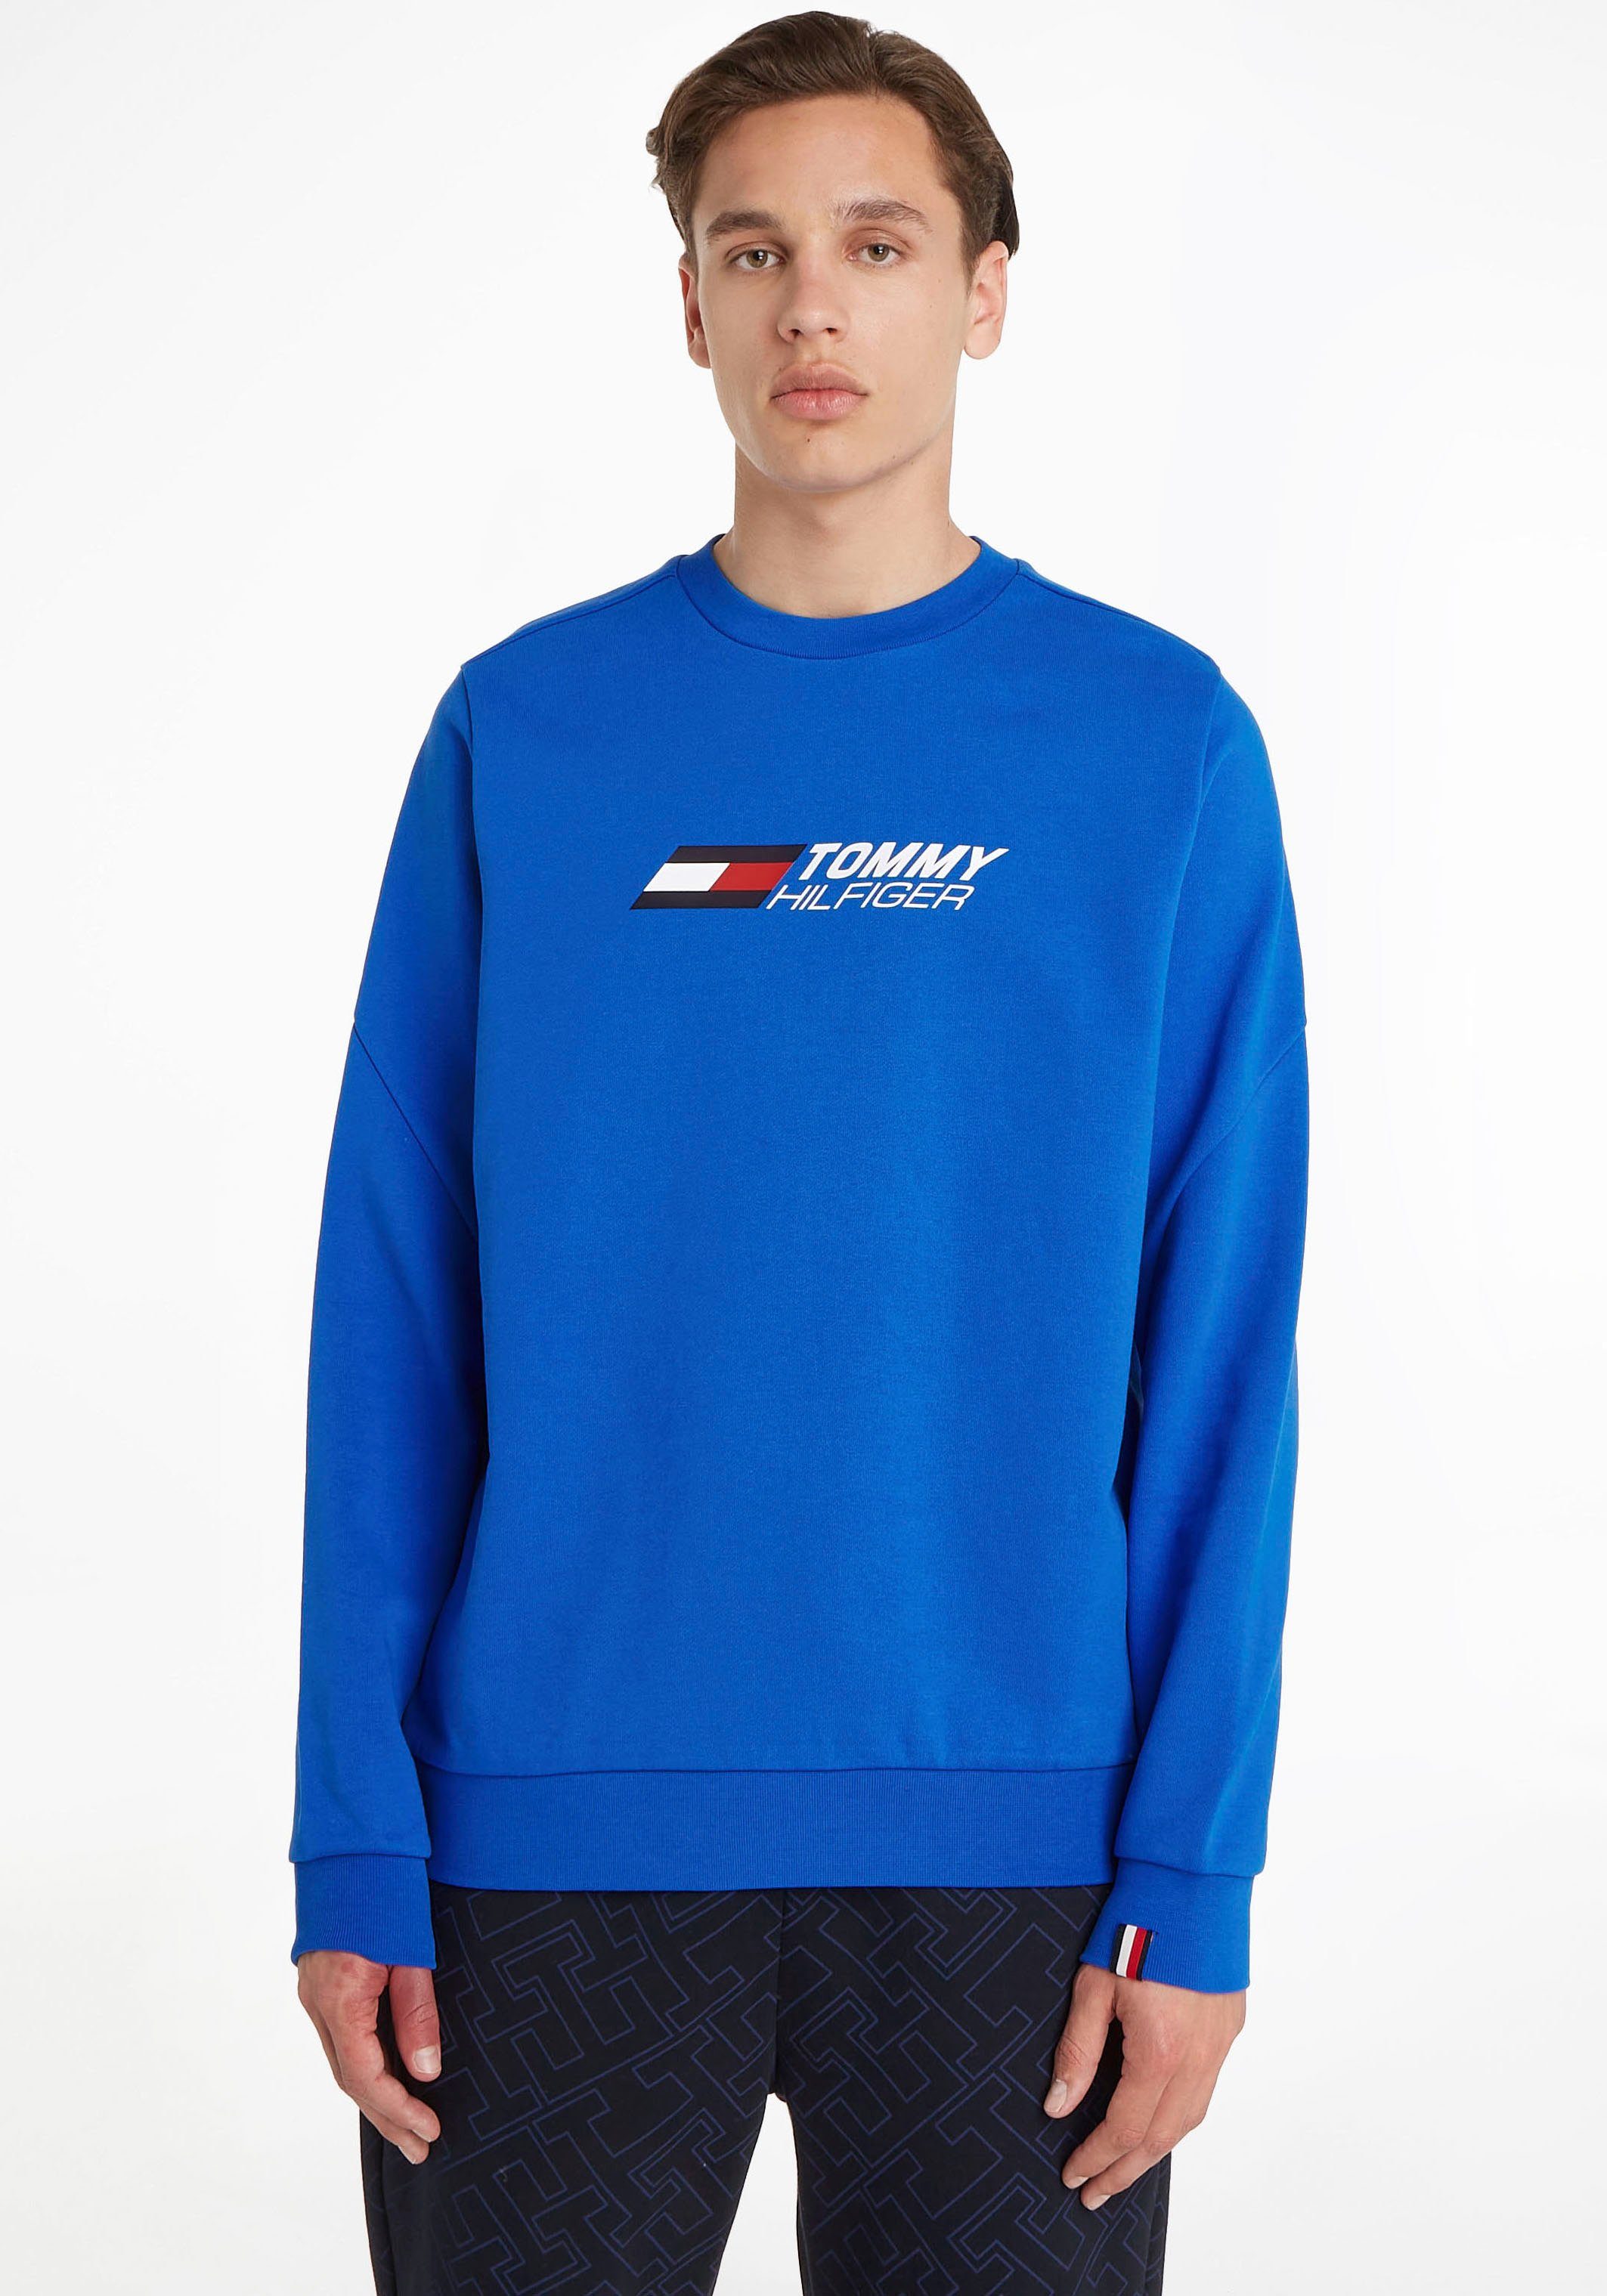 Tommy Jeans Sweatshirts online kaufen | OTTO | Sweatshirts